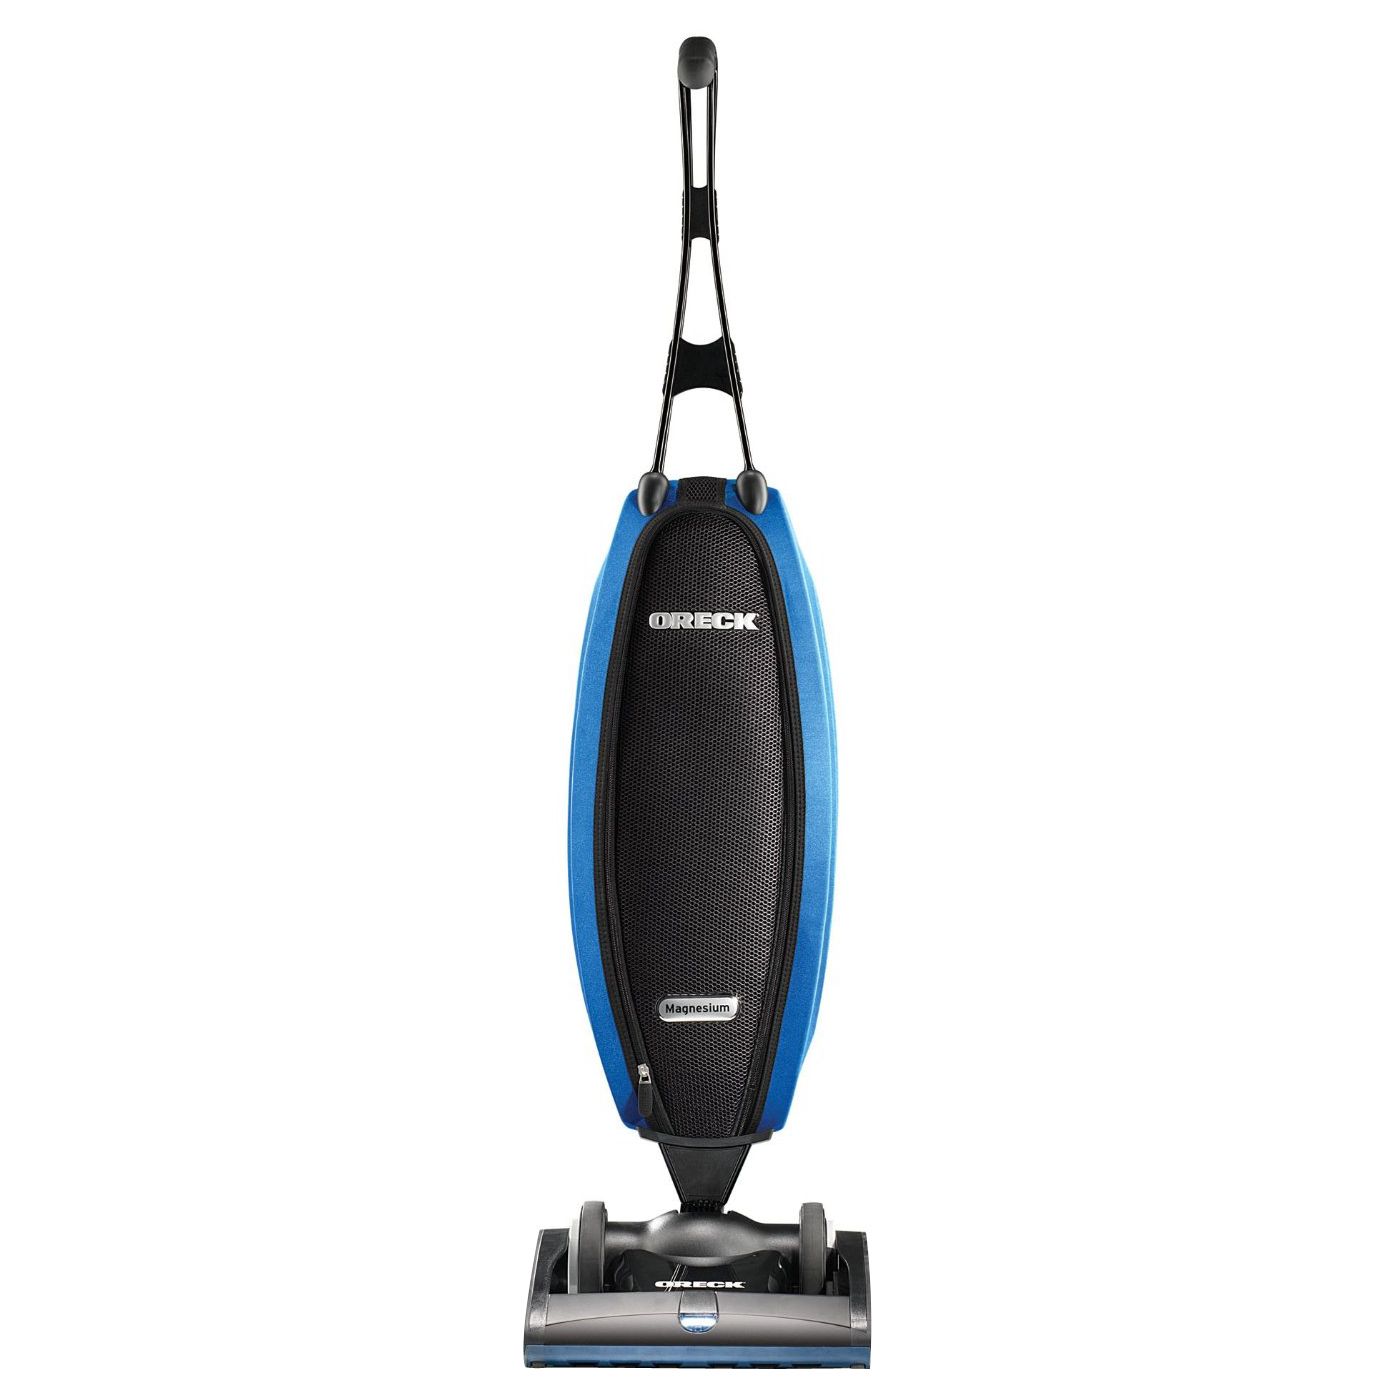 Oreck Magnesium SP LW100 Upright Vacuum Cleaner, Black / Blue